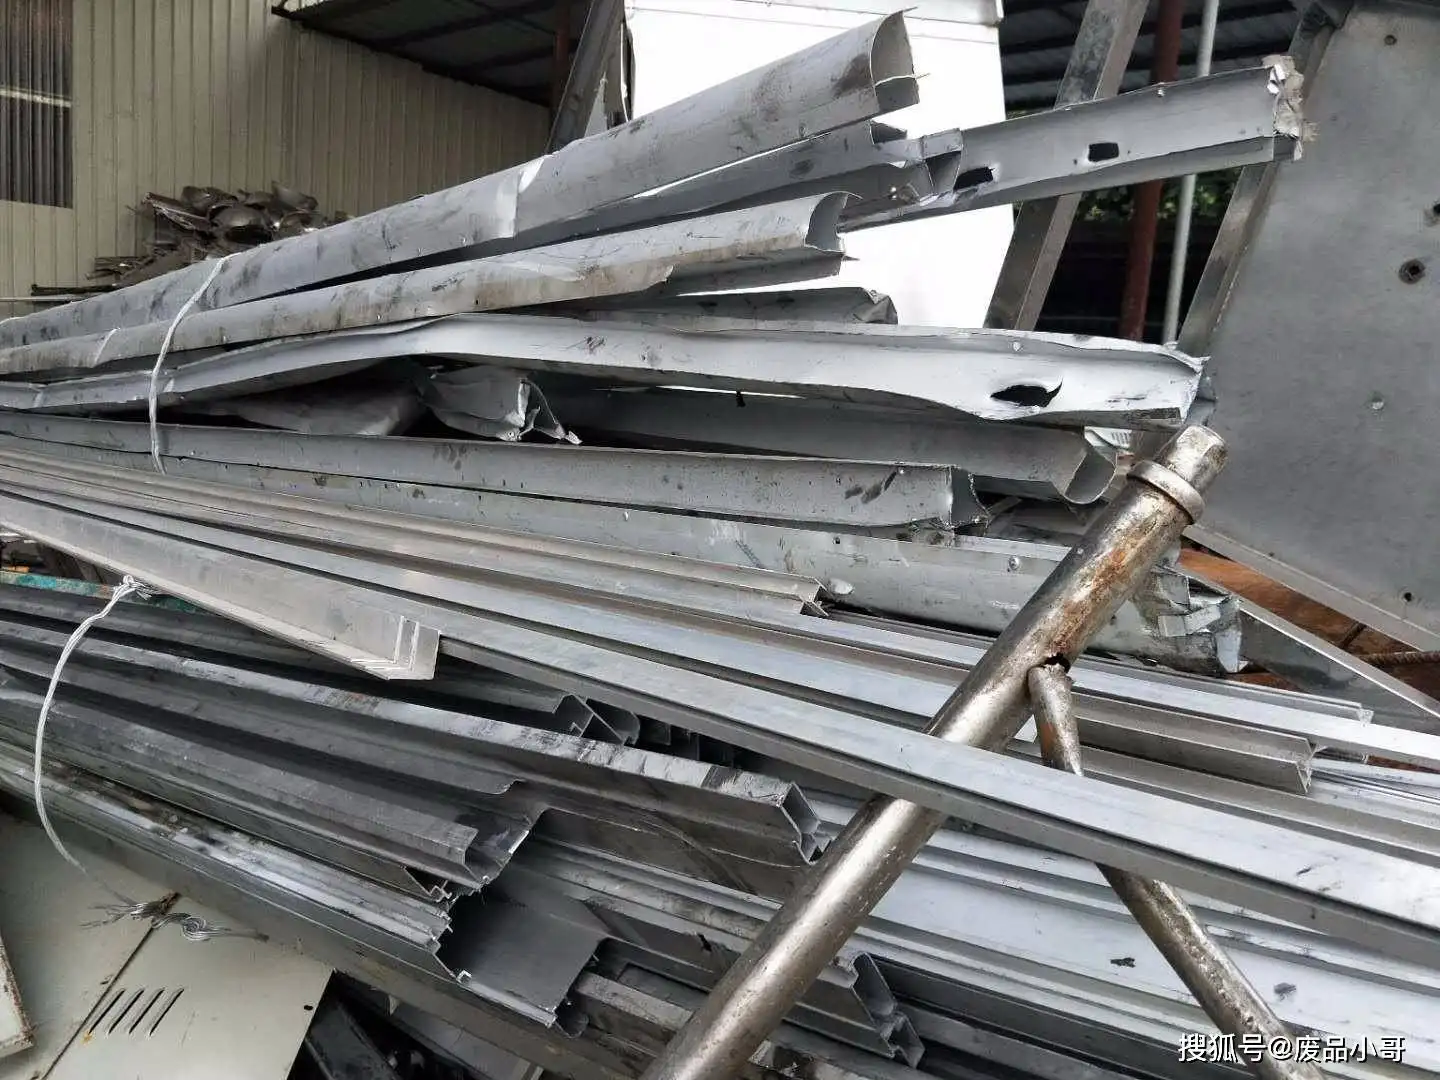 泉州市泉州废旧不锈钢回收公司厂家泉州废旧不锈钢回收公司-厂家-价格